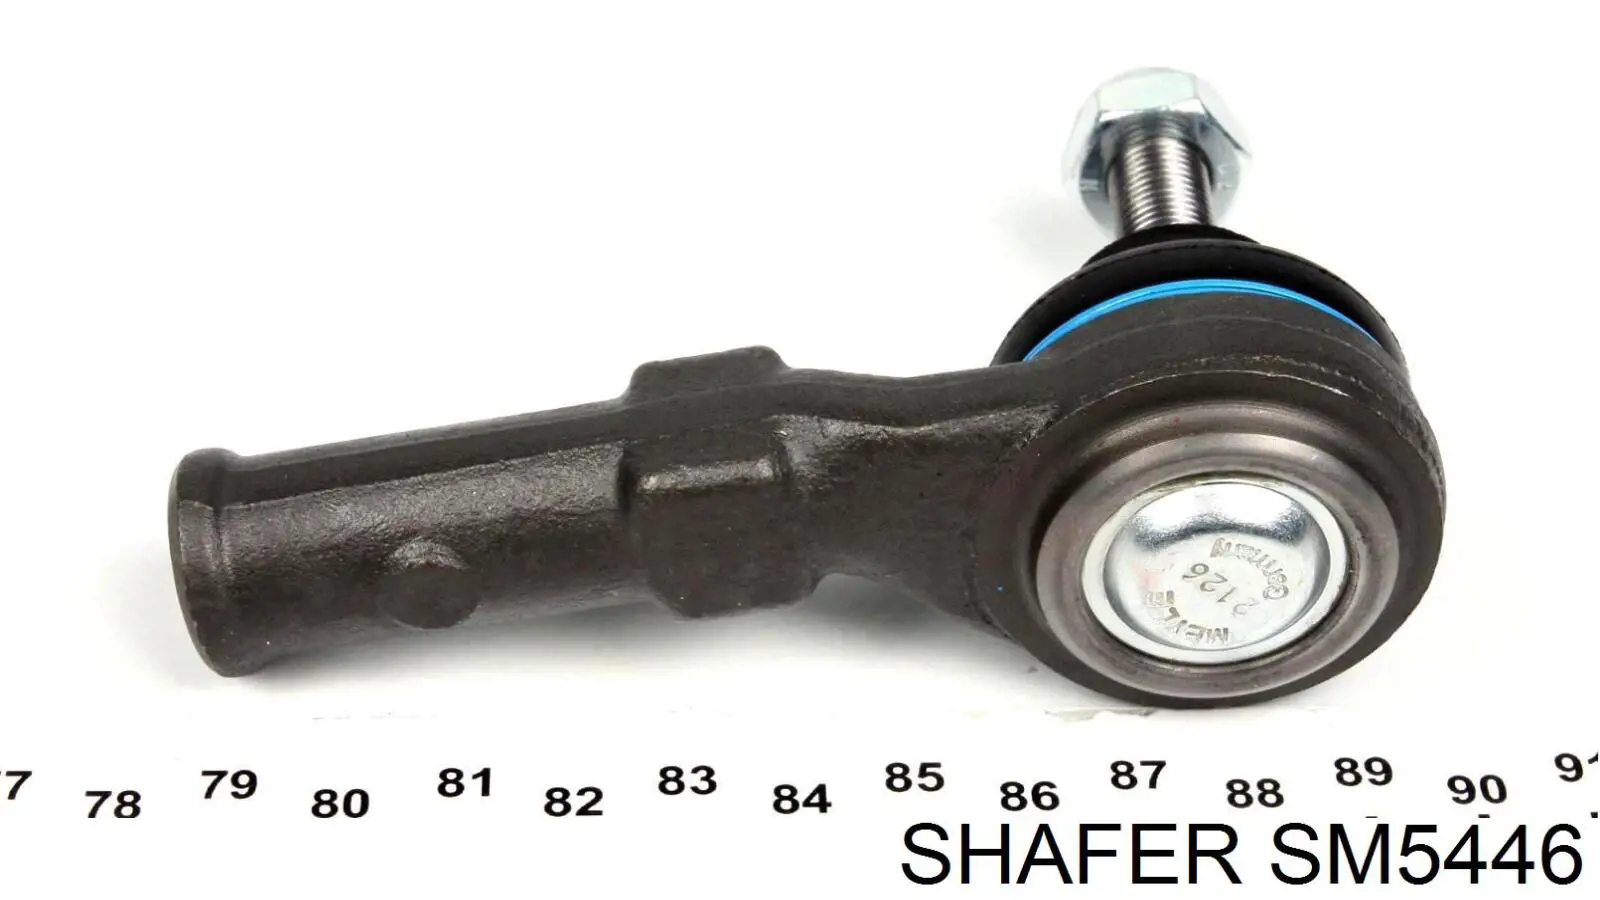 SM5446 Shafer ponta externa da barra de direção